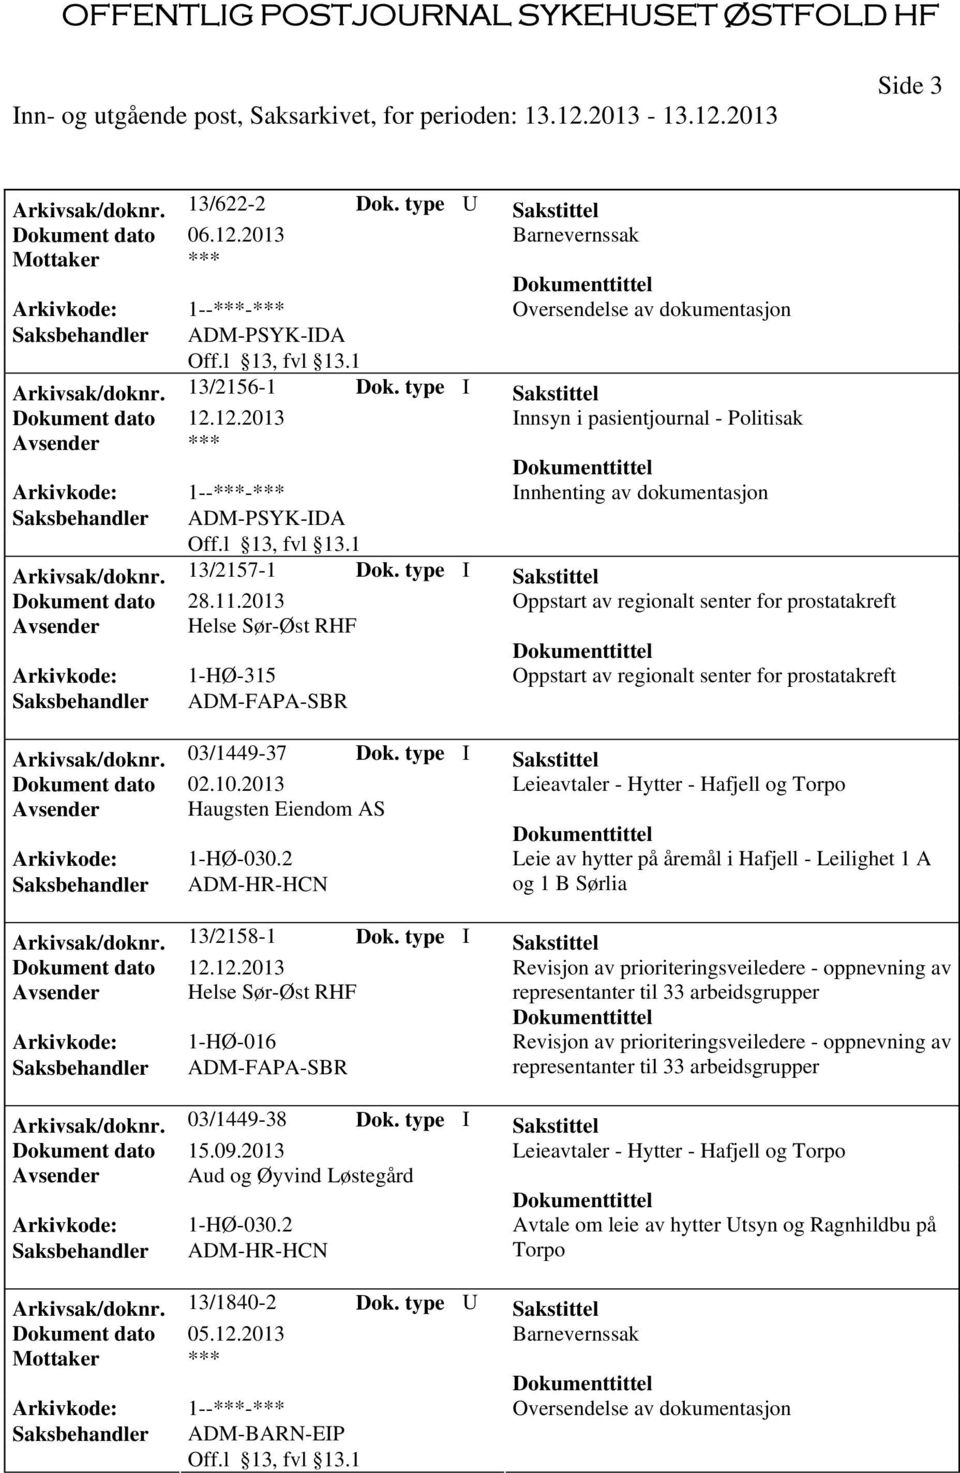 type I Sakstittel Dokument dato 02.10.2013 Leieavtaler - Hytter - Hafjell og Torpo Avsender Haugsten Eiendom AS Arkivkode: 1-HØ-030.